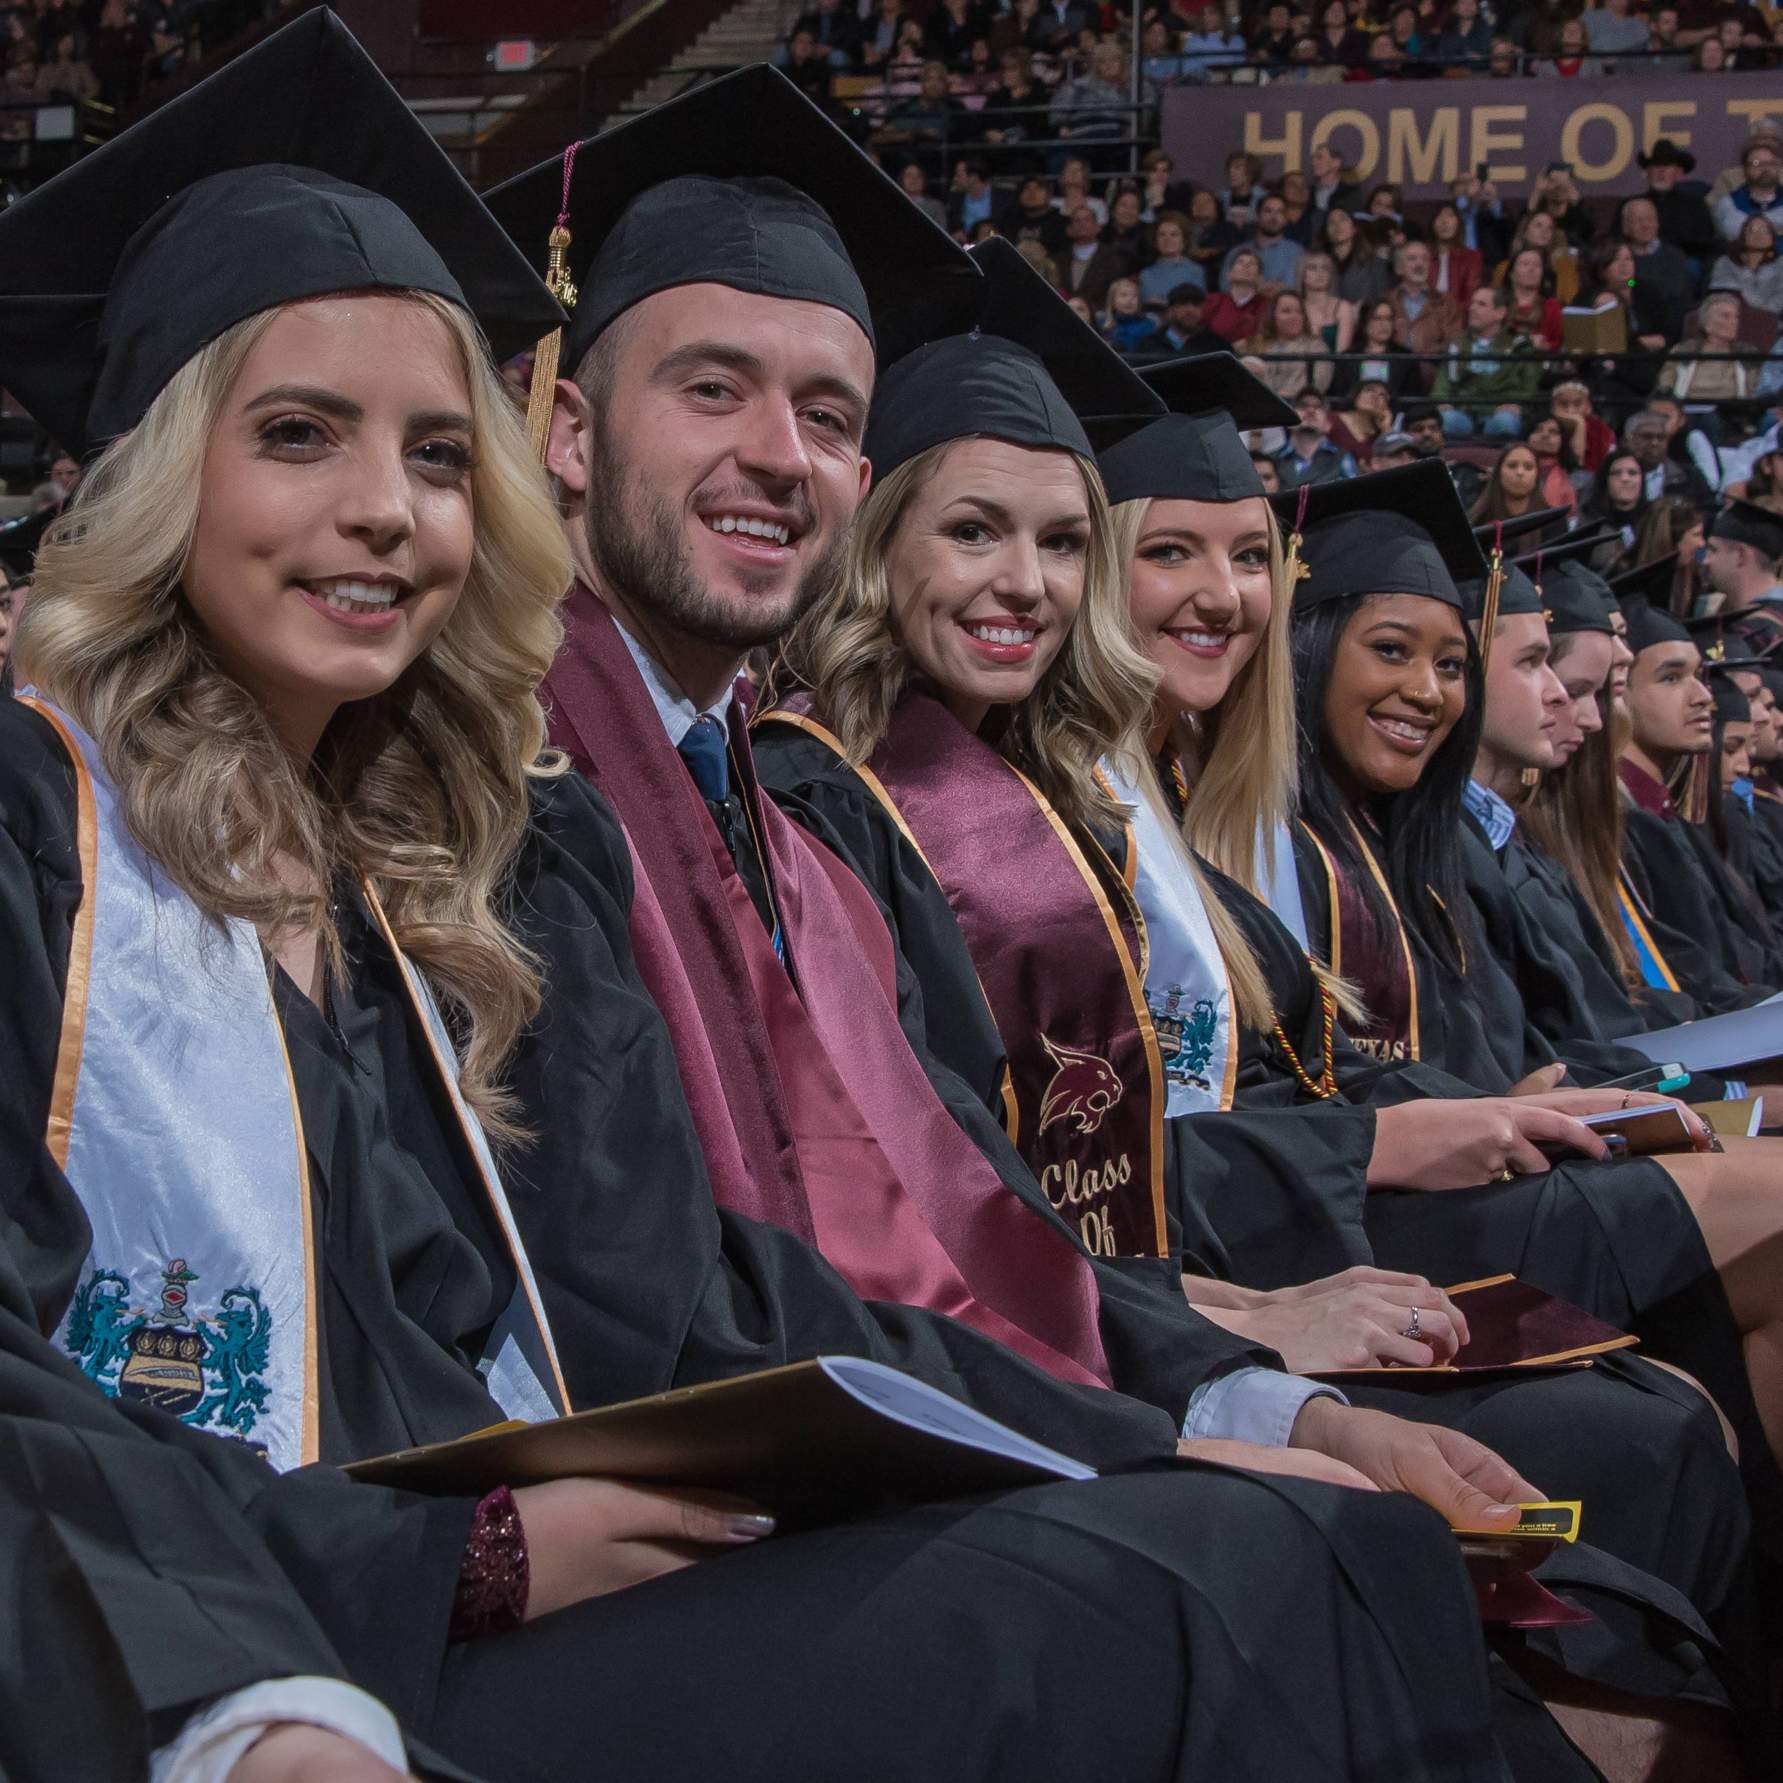 graduates smiling, seated on floor